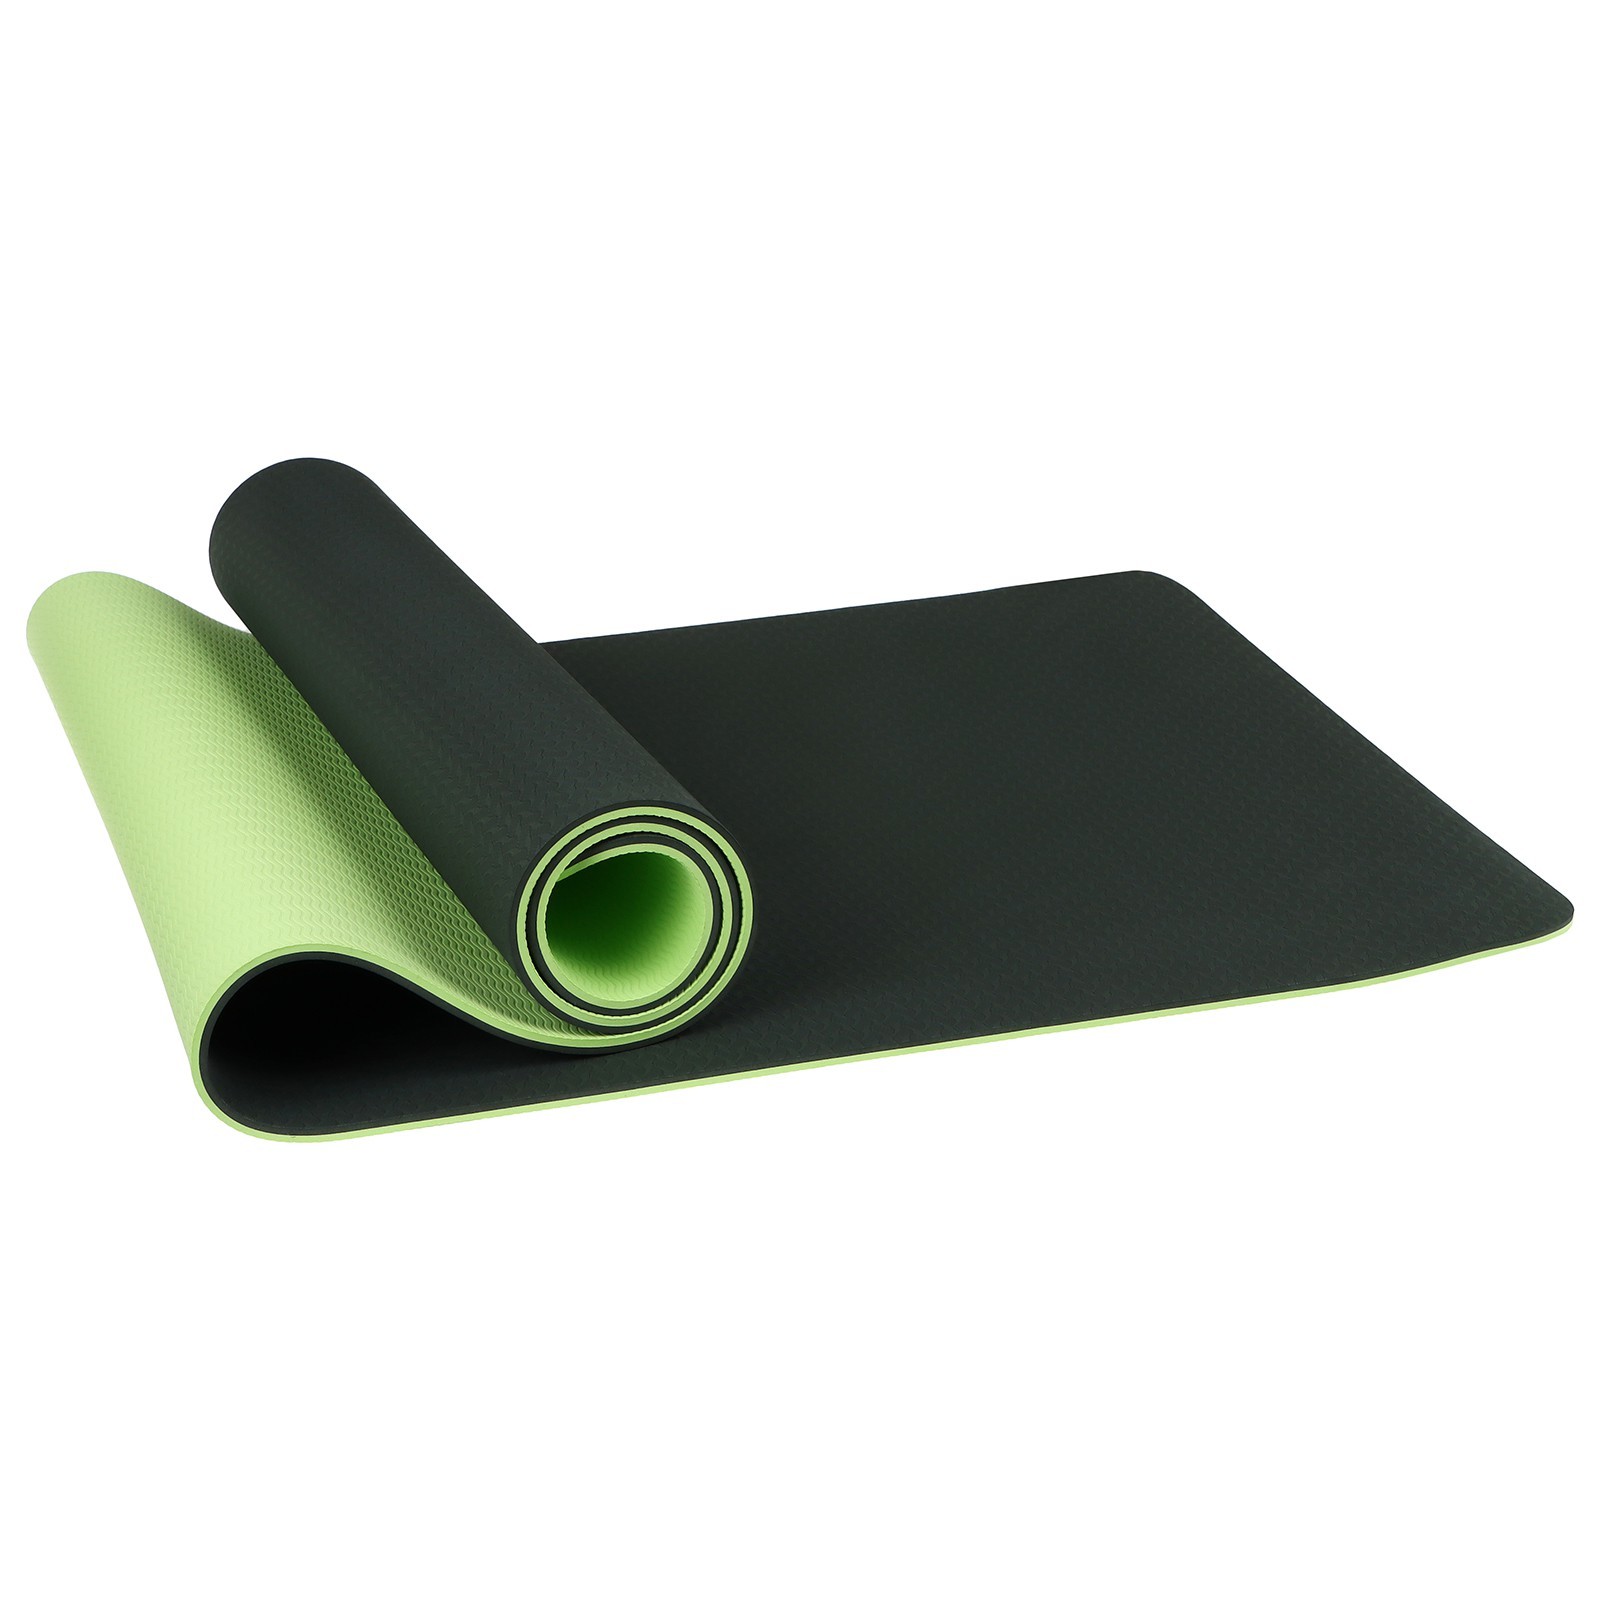 Коврик для йоги Sangh двухцветный dark green/light green 183 см, 8 мм